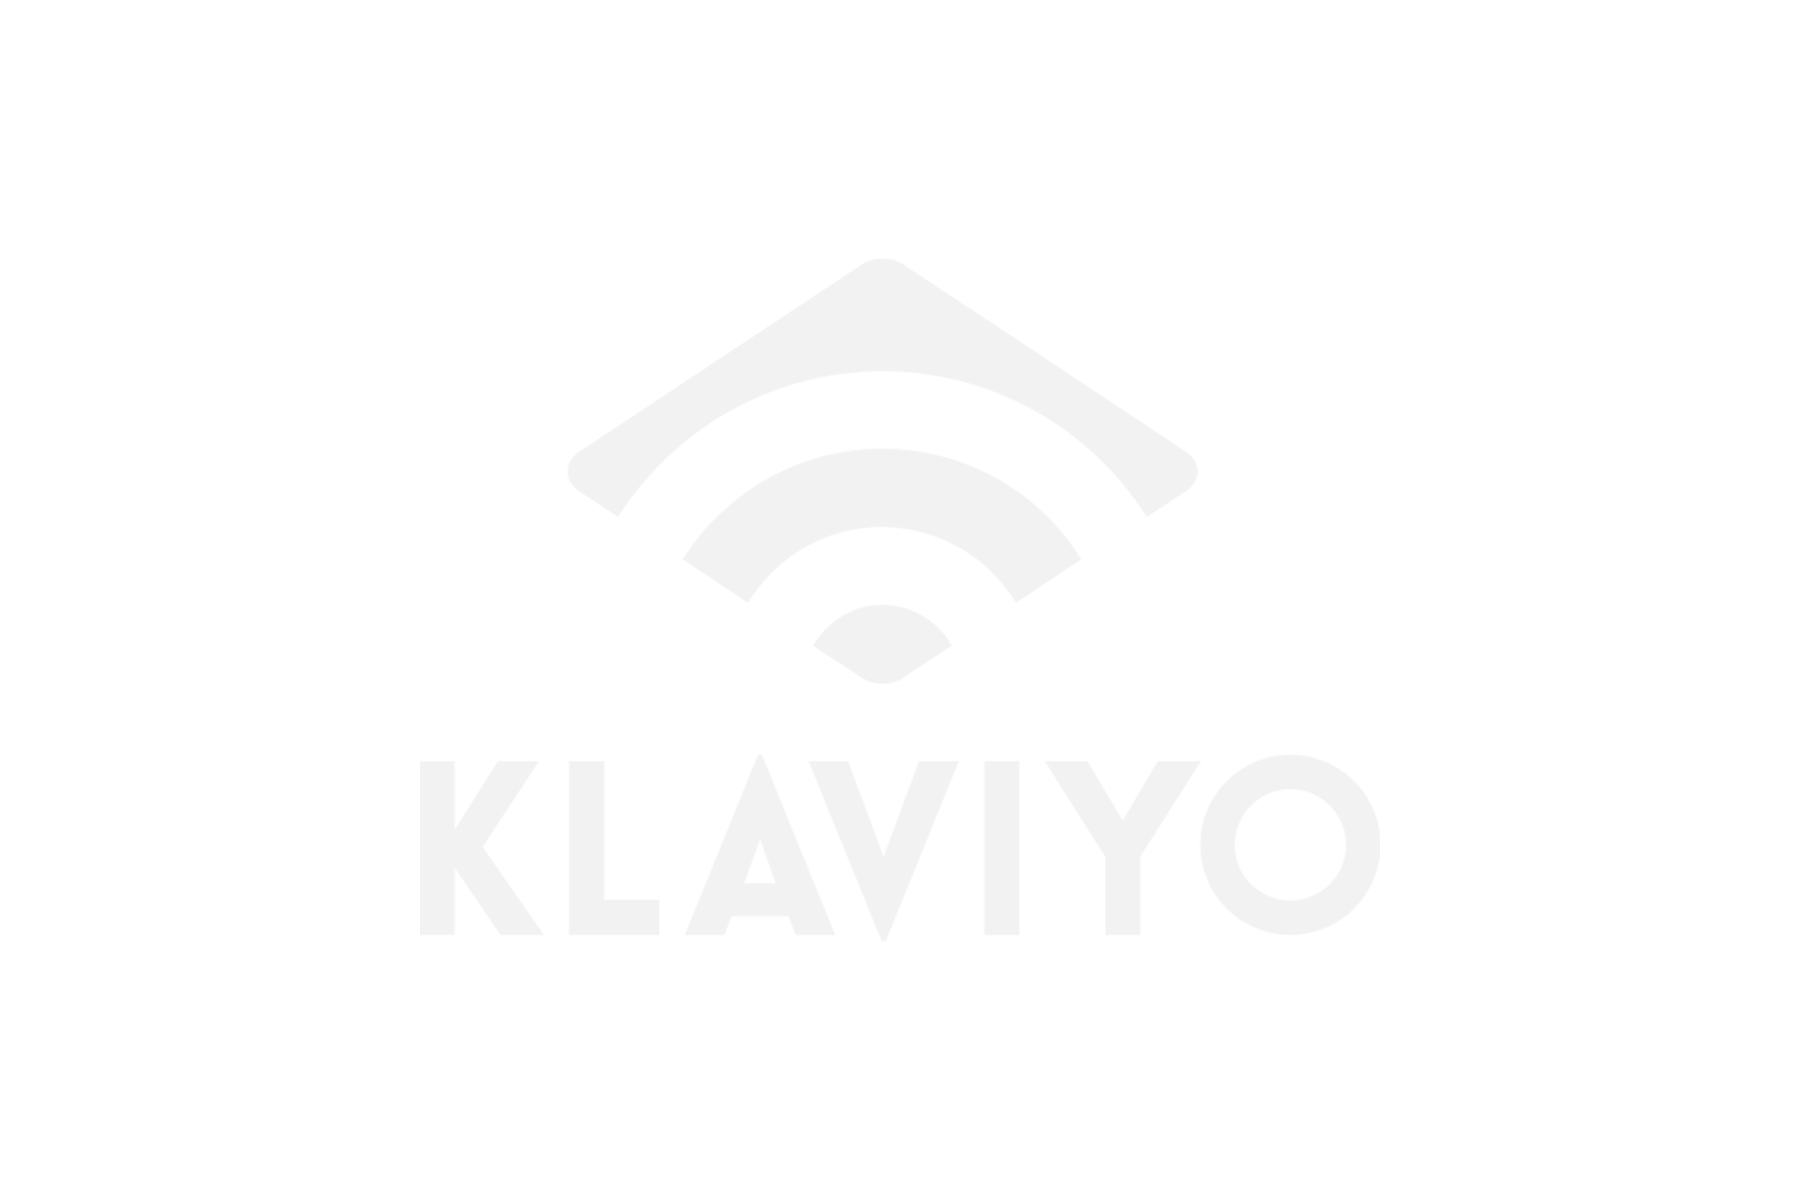 klaviyo.png